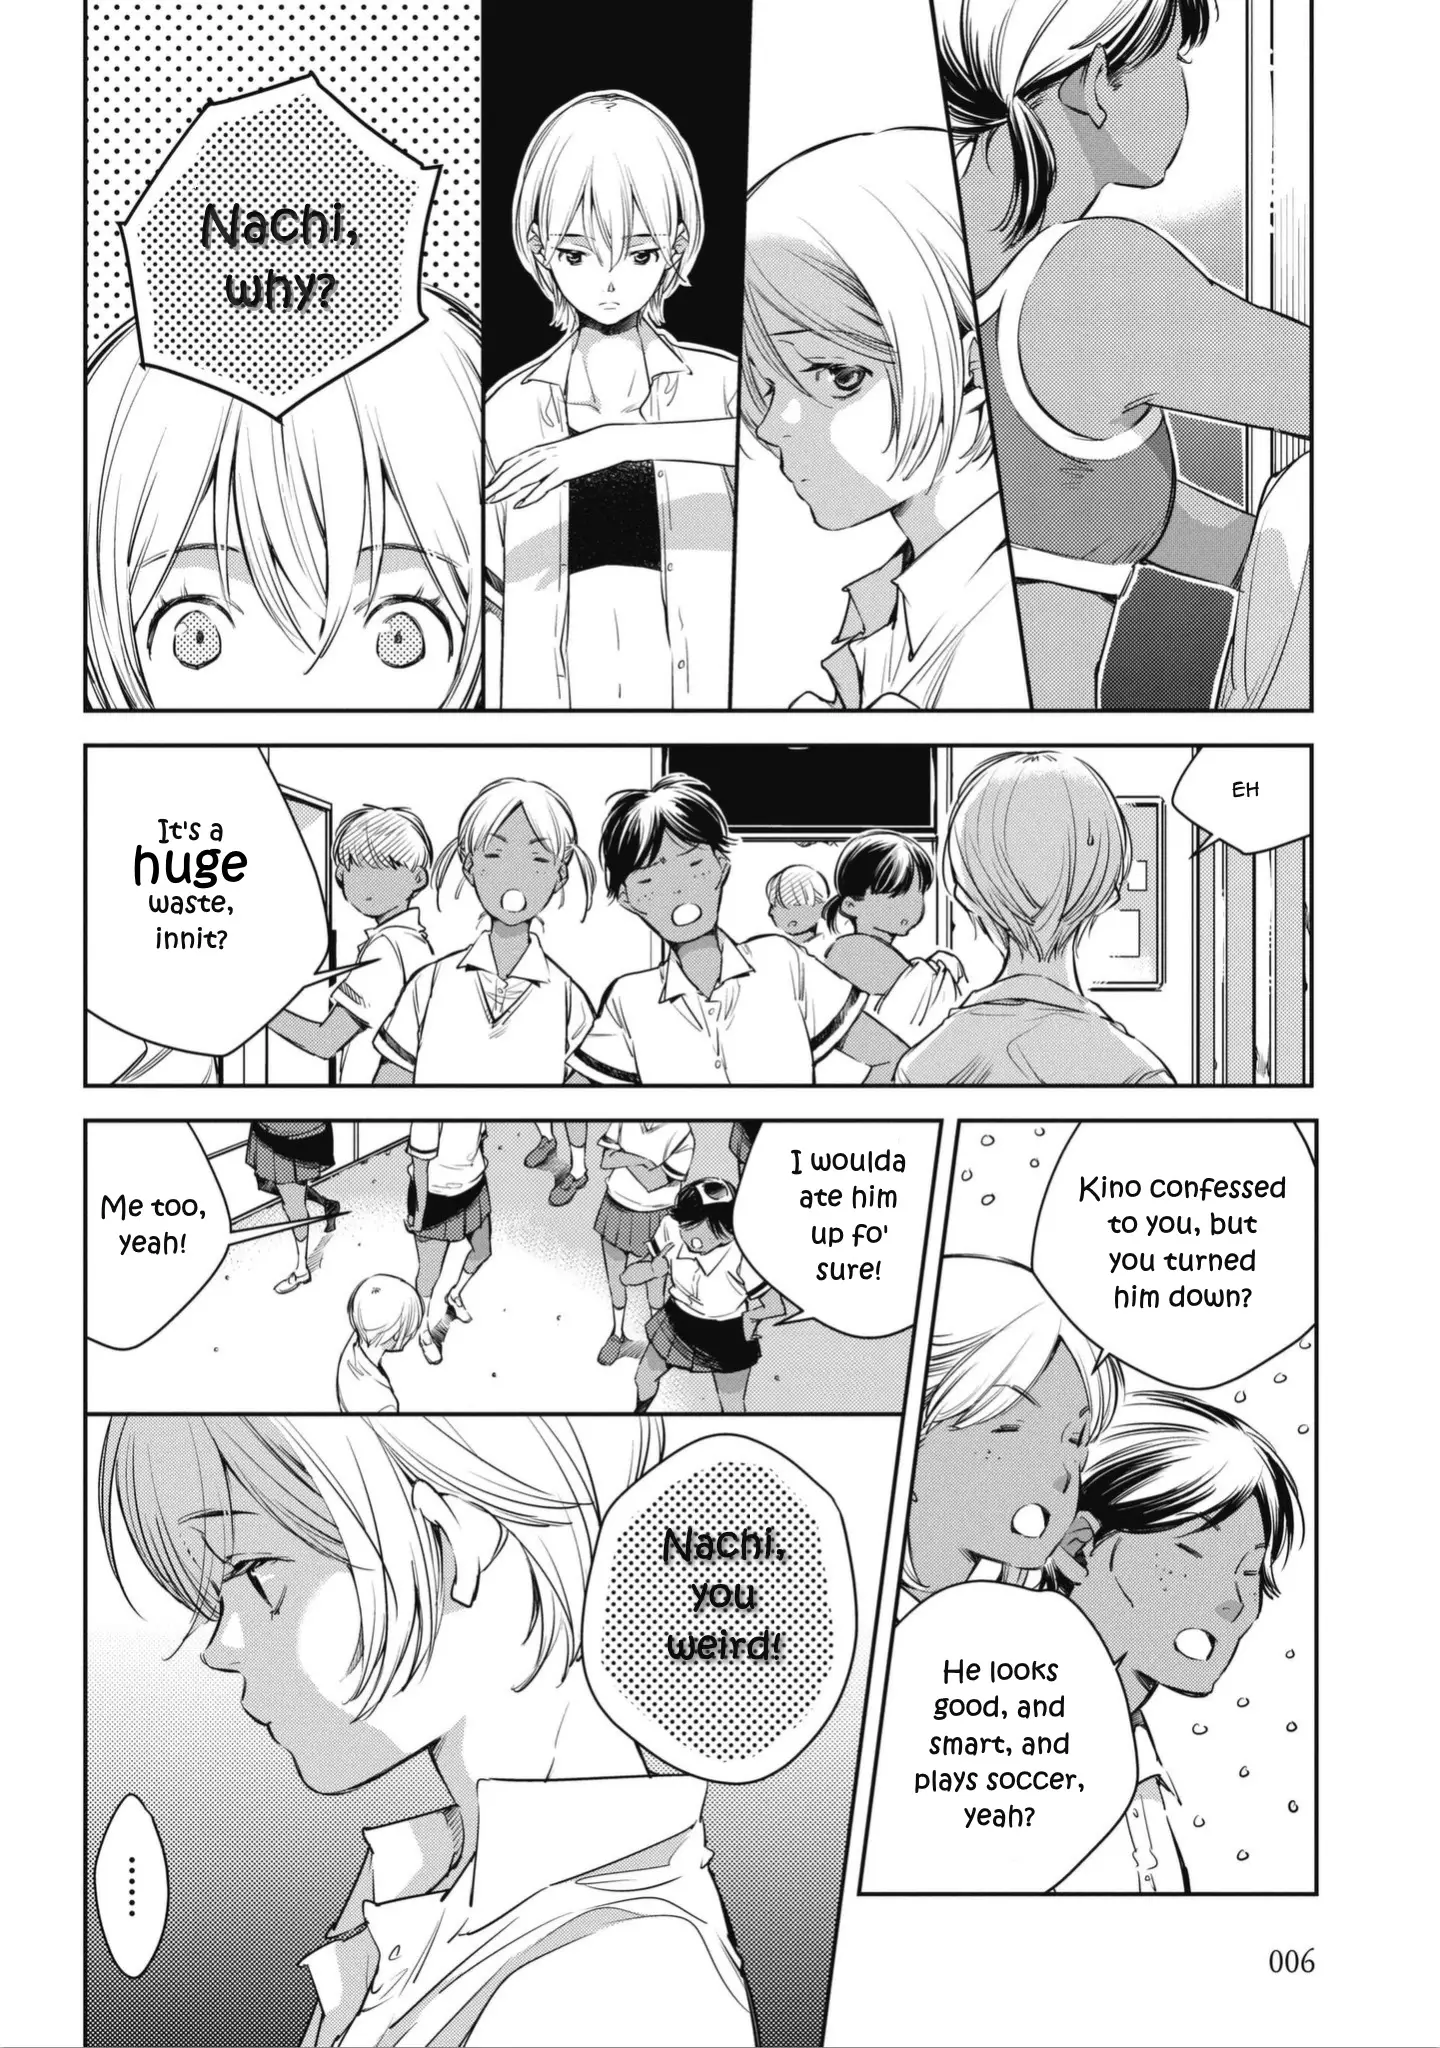 Okashiratsuki - 1 page 8